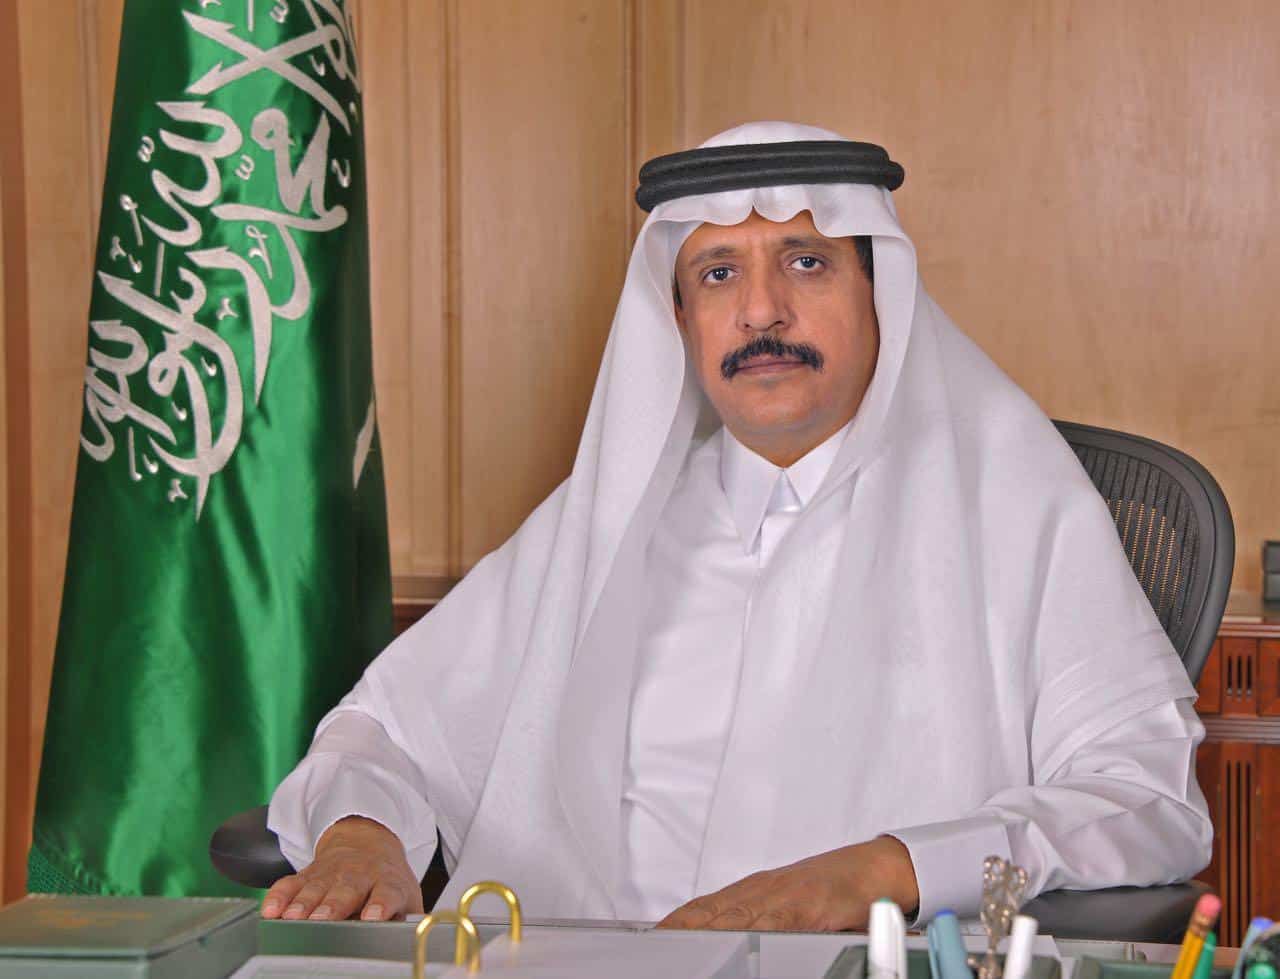 آل هيازع : الدولة السعودية الأولى قامت على أسس مترابطة دينياً واجتماعياً